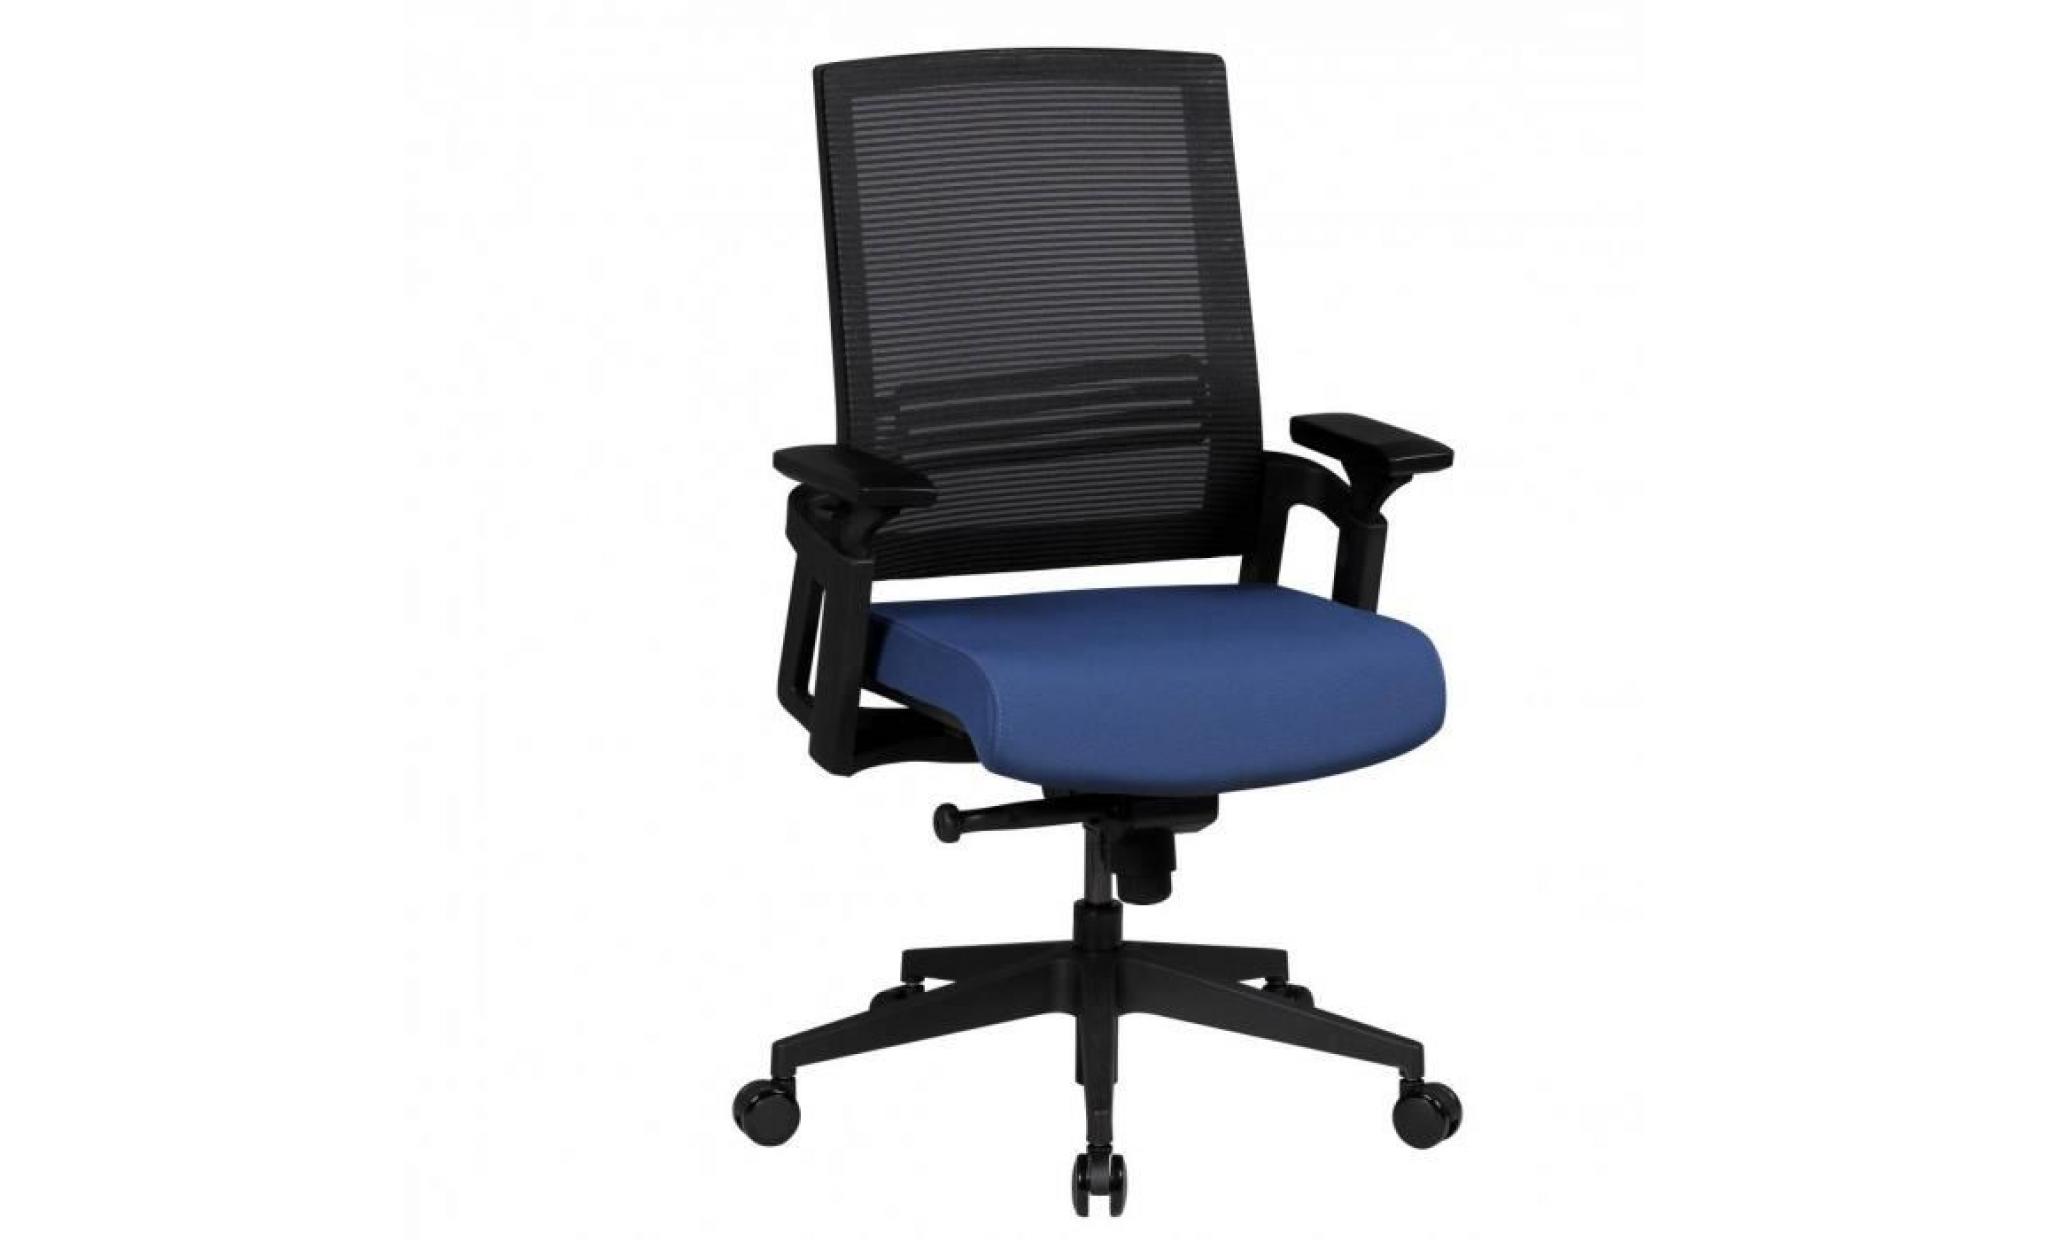 chaise de bureau apollo a2 chaise de bureau en tissu bleu accoudoir chefsessel 120 kg chaise pivotante mécanisme synchrone xxl